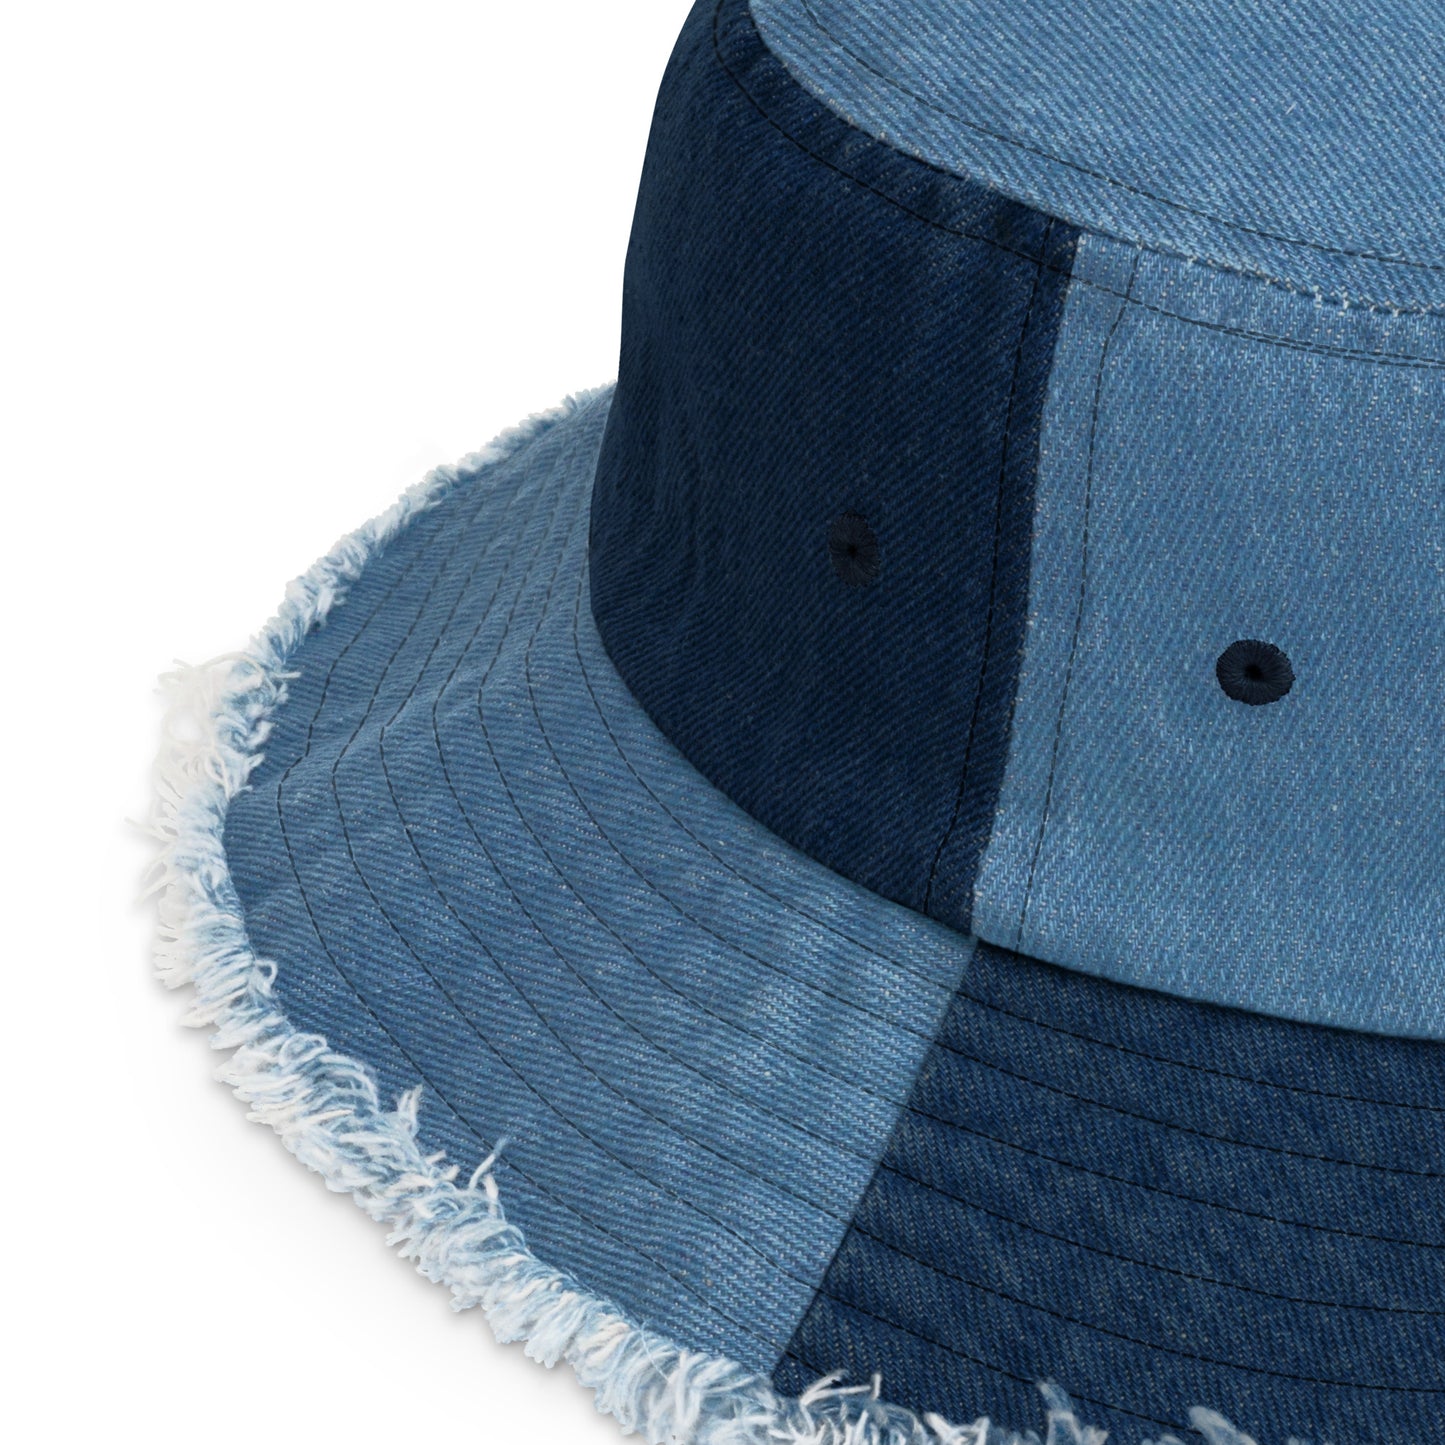 Y006 - หมวกบักเก็ตผ้าเดนิม (น้ำเงิน/กรมท่า)